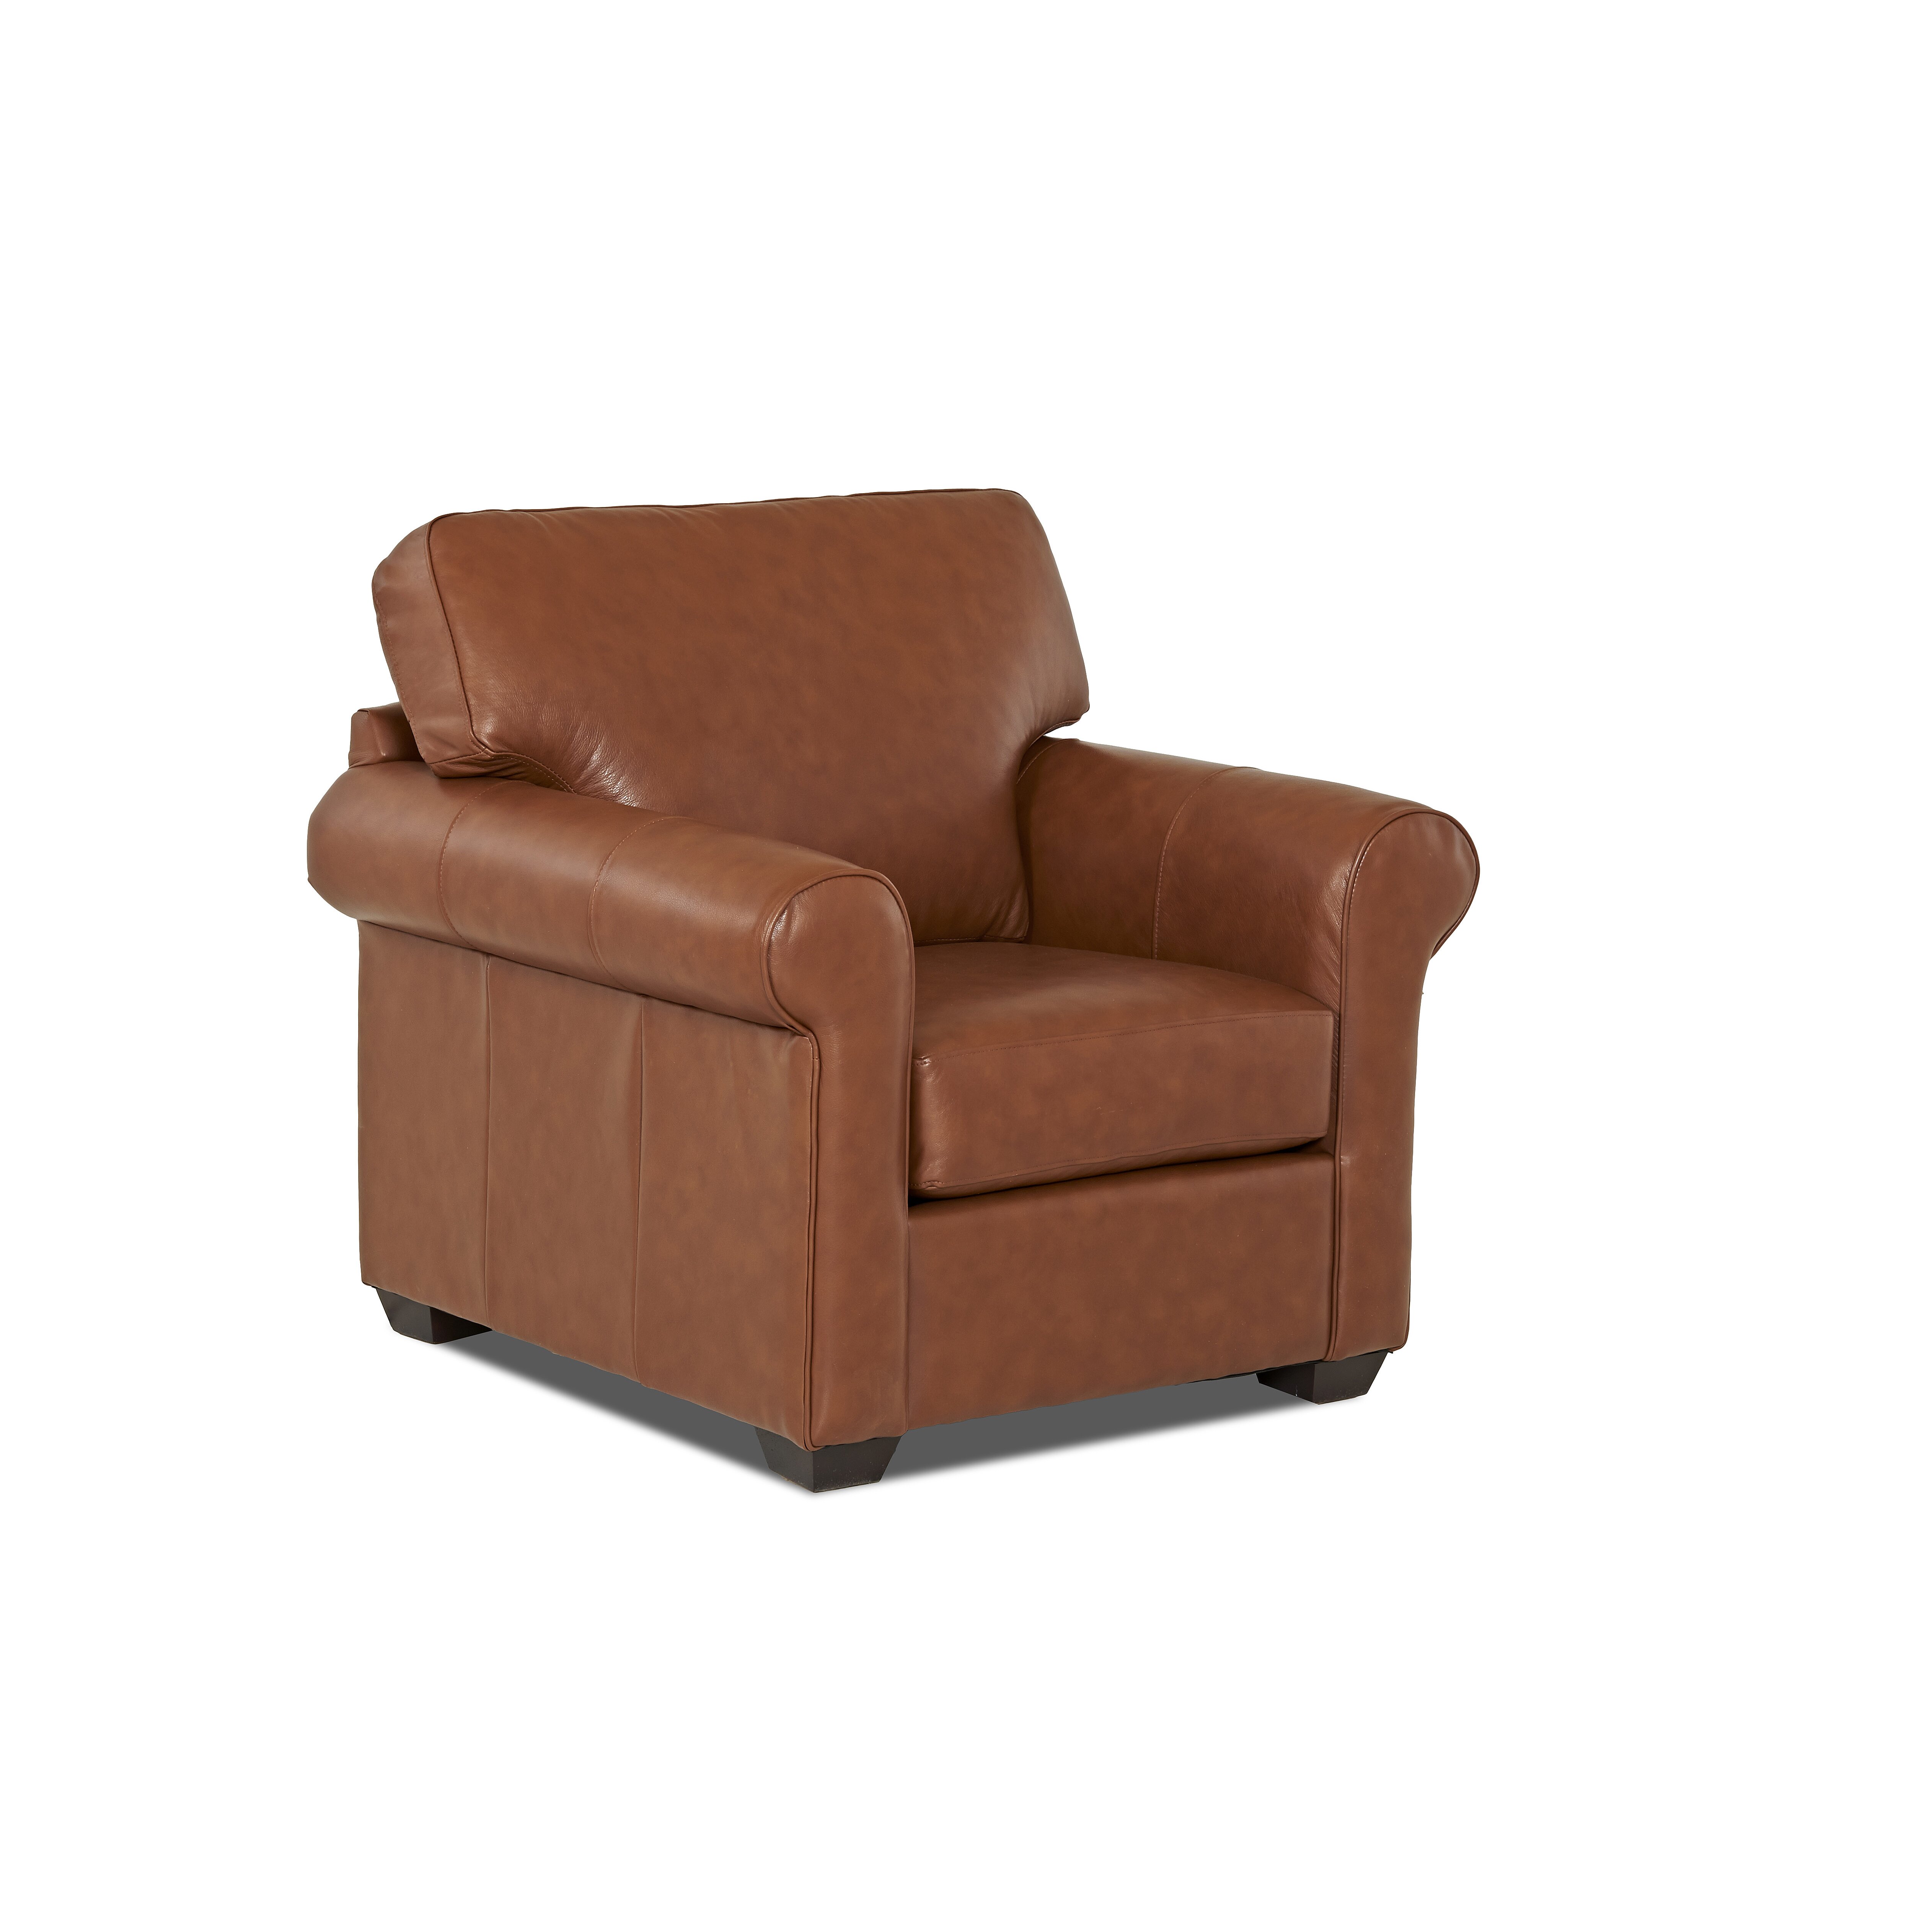 Wayfair Custom Upholstery Rachel Leather Arm Chair 